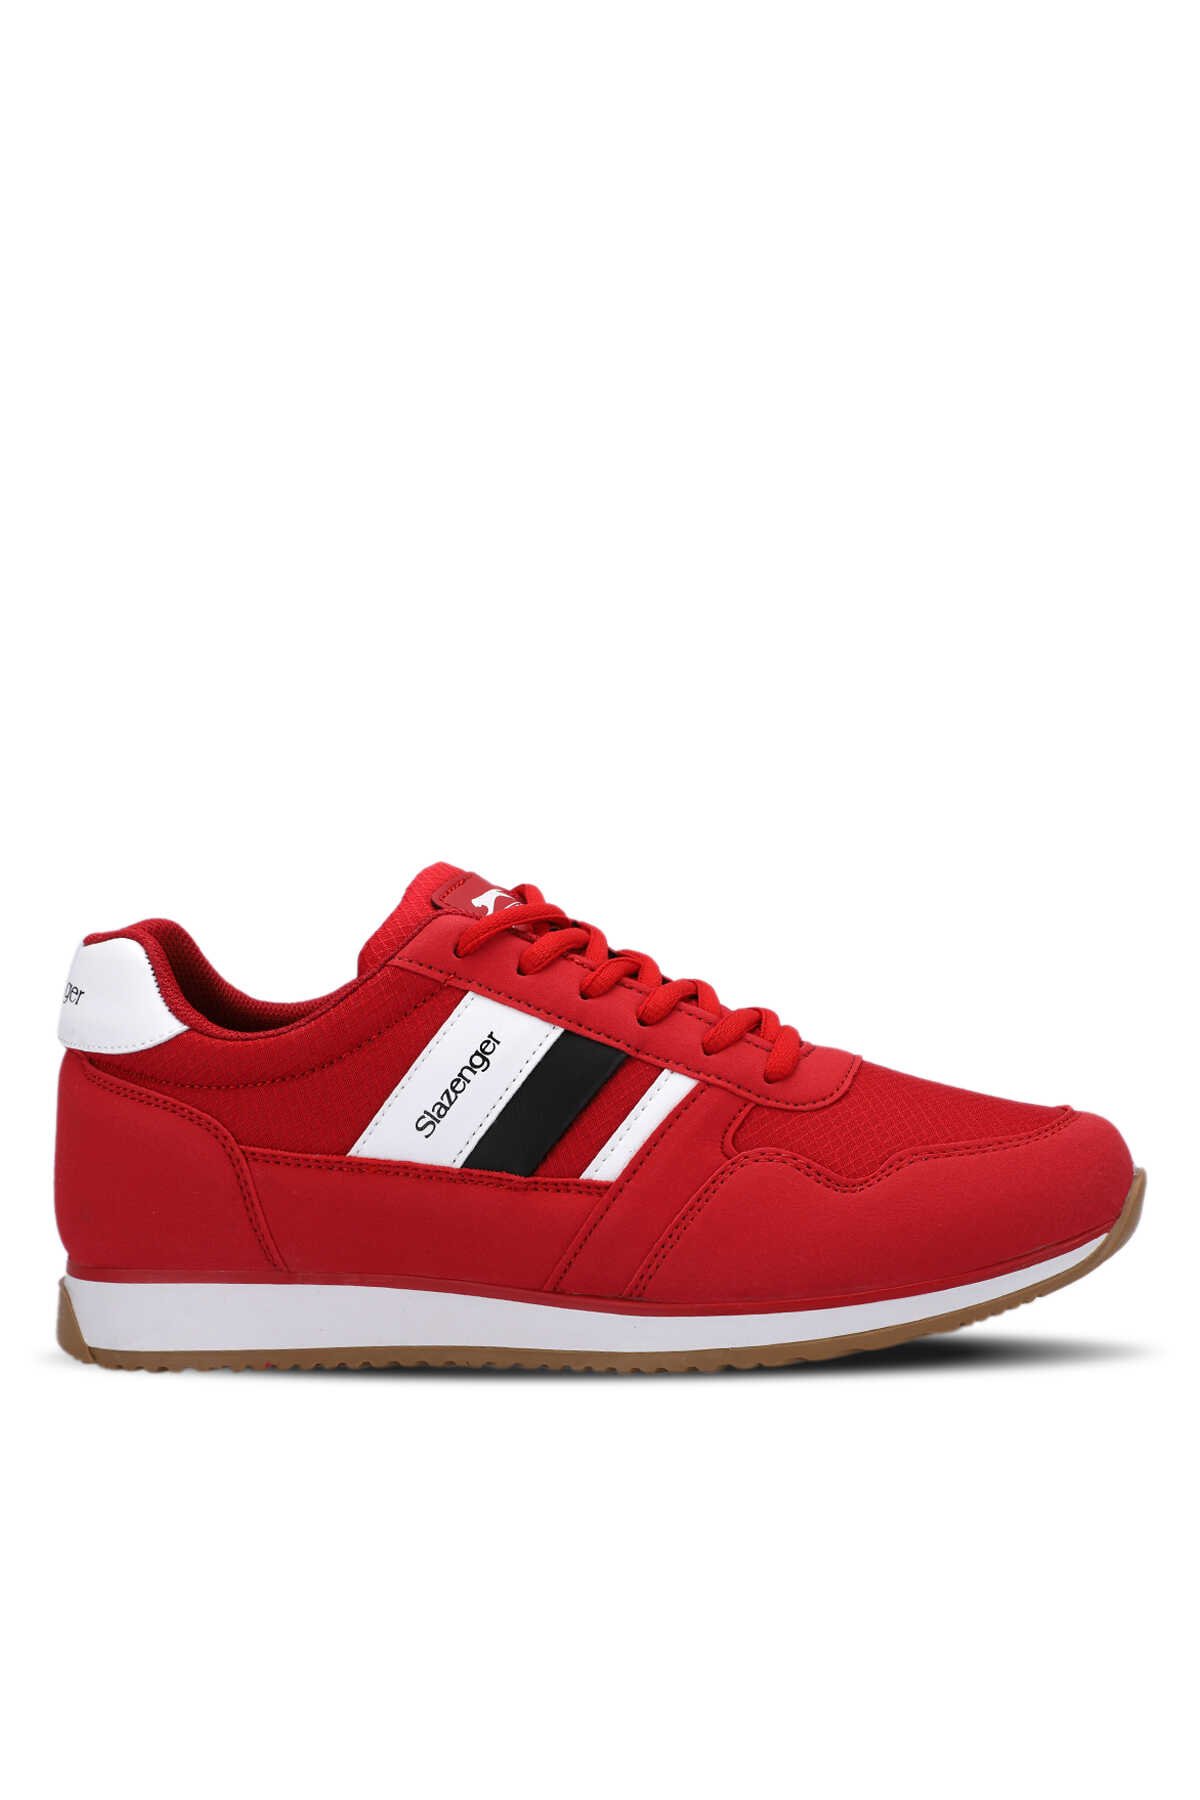 Slazenger - Slazenger ORIGIN I Sneaker Erkek Ayakkabı Kırmızı